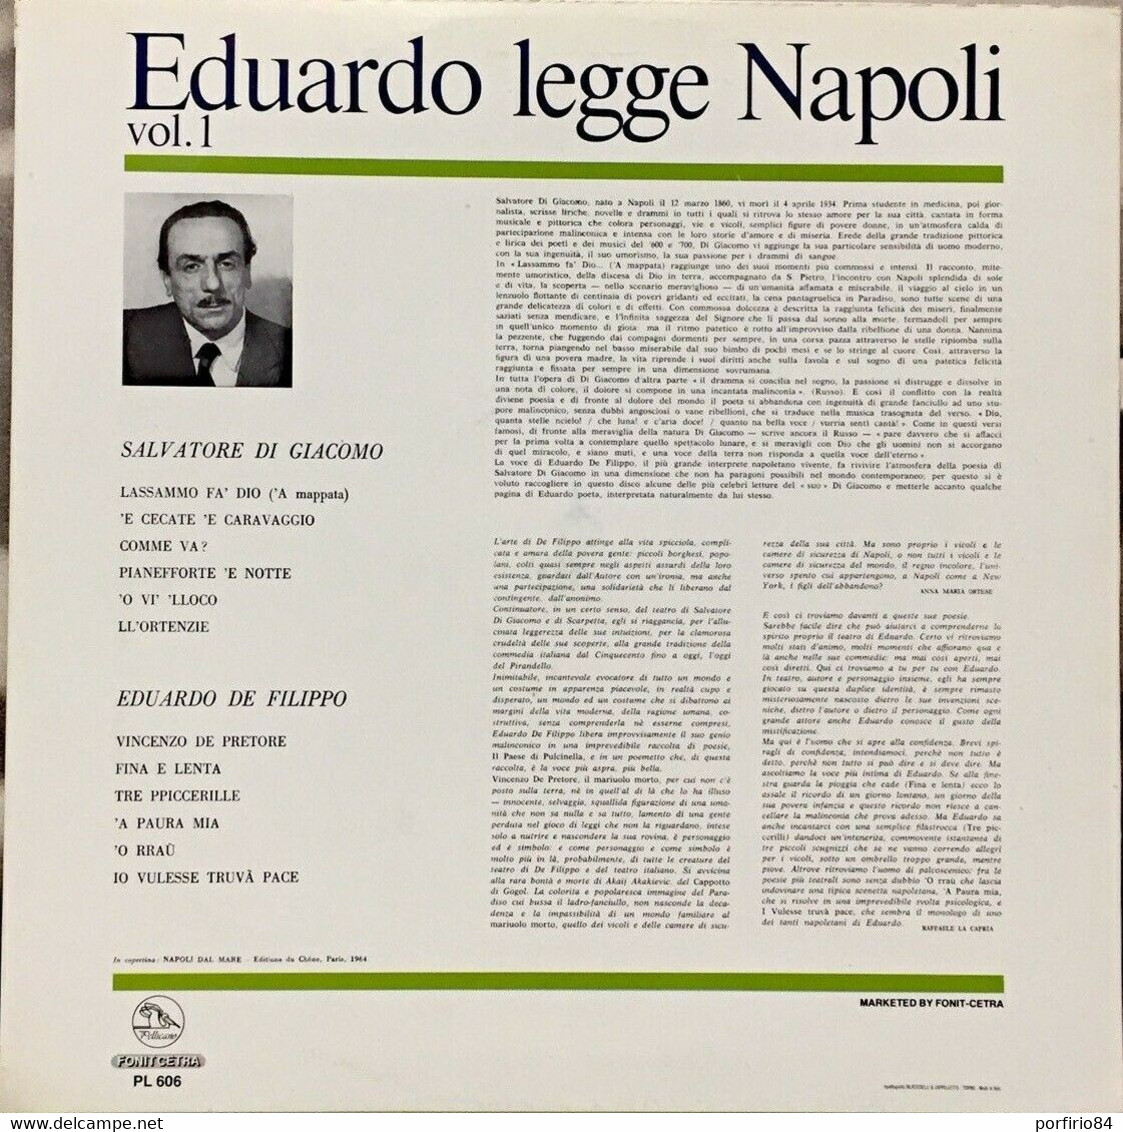 EDUARDO DE FILIPPO RARO LP - EDUARDO LEGGE NAPOLI VOL. 1 SALVATORE DI GIACOMO - Sonstige - Italienische Musik